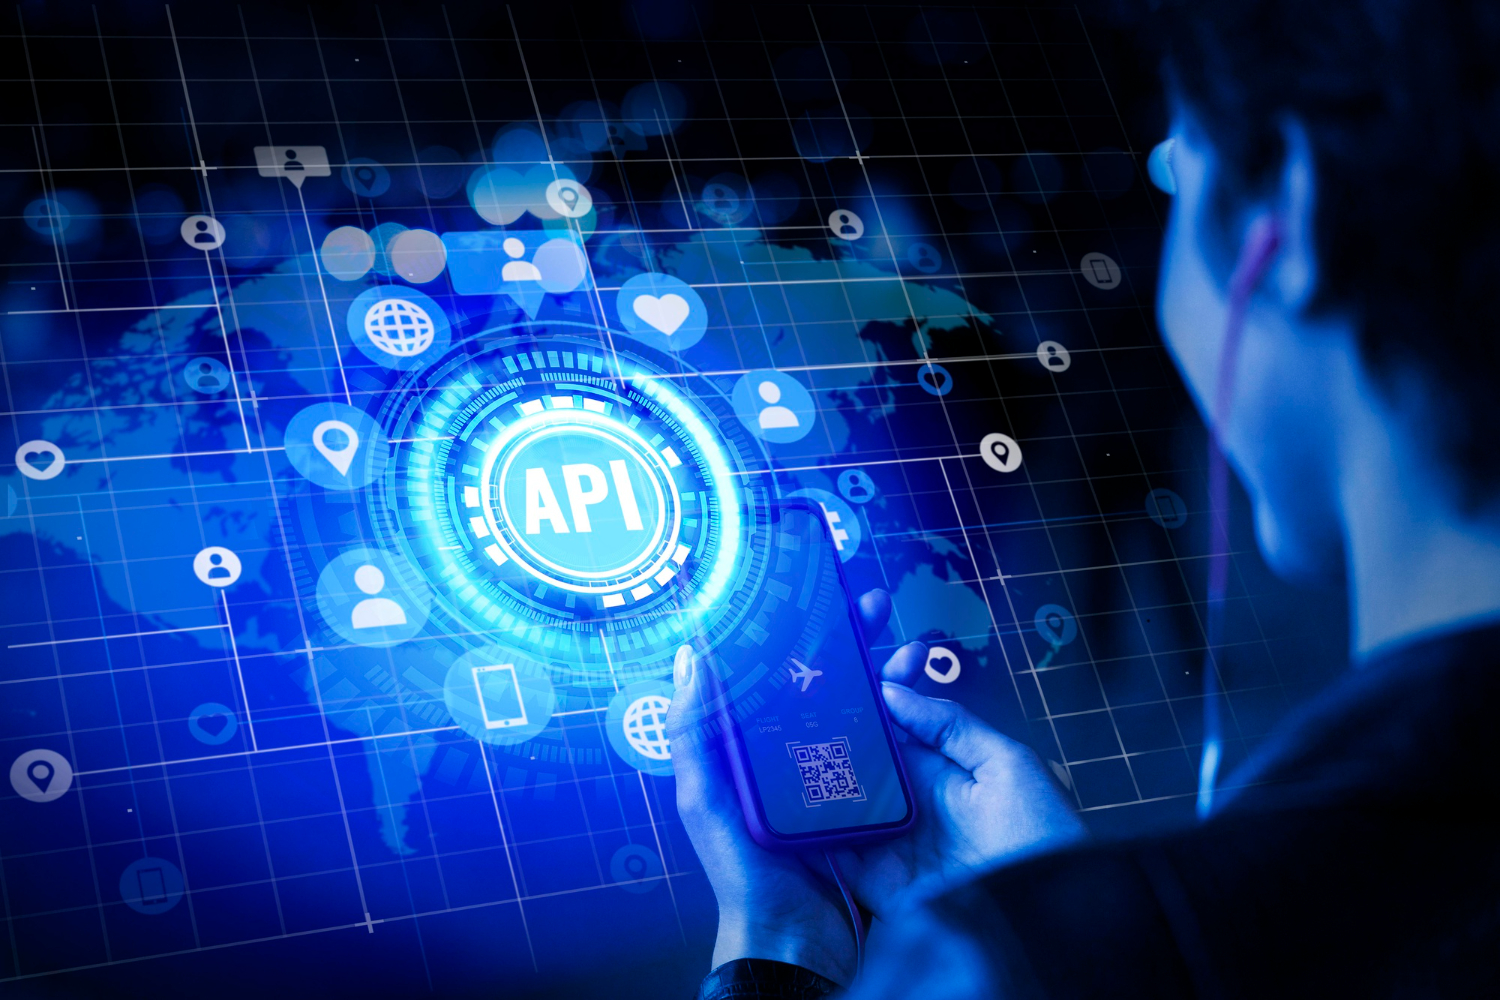 API Services